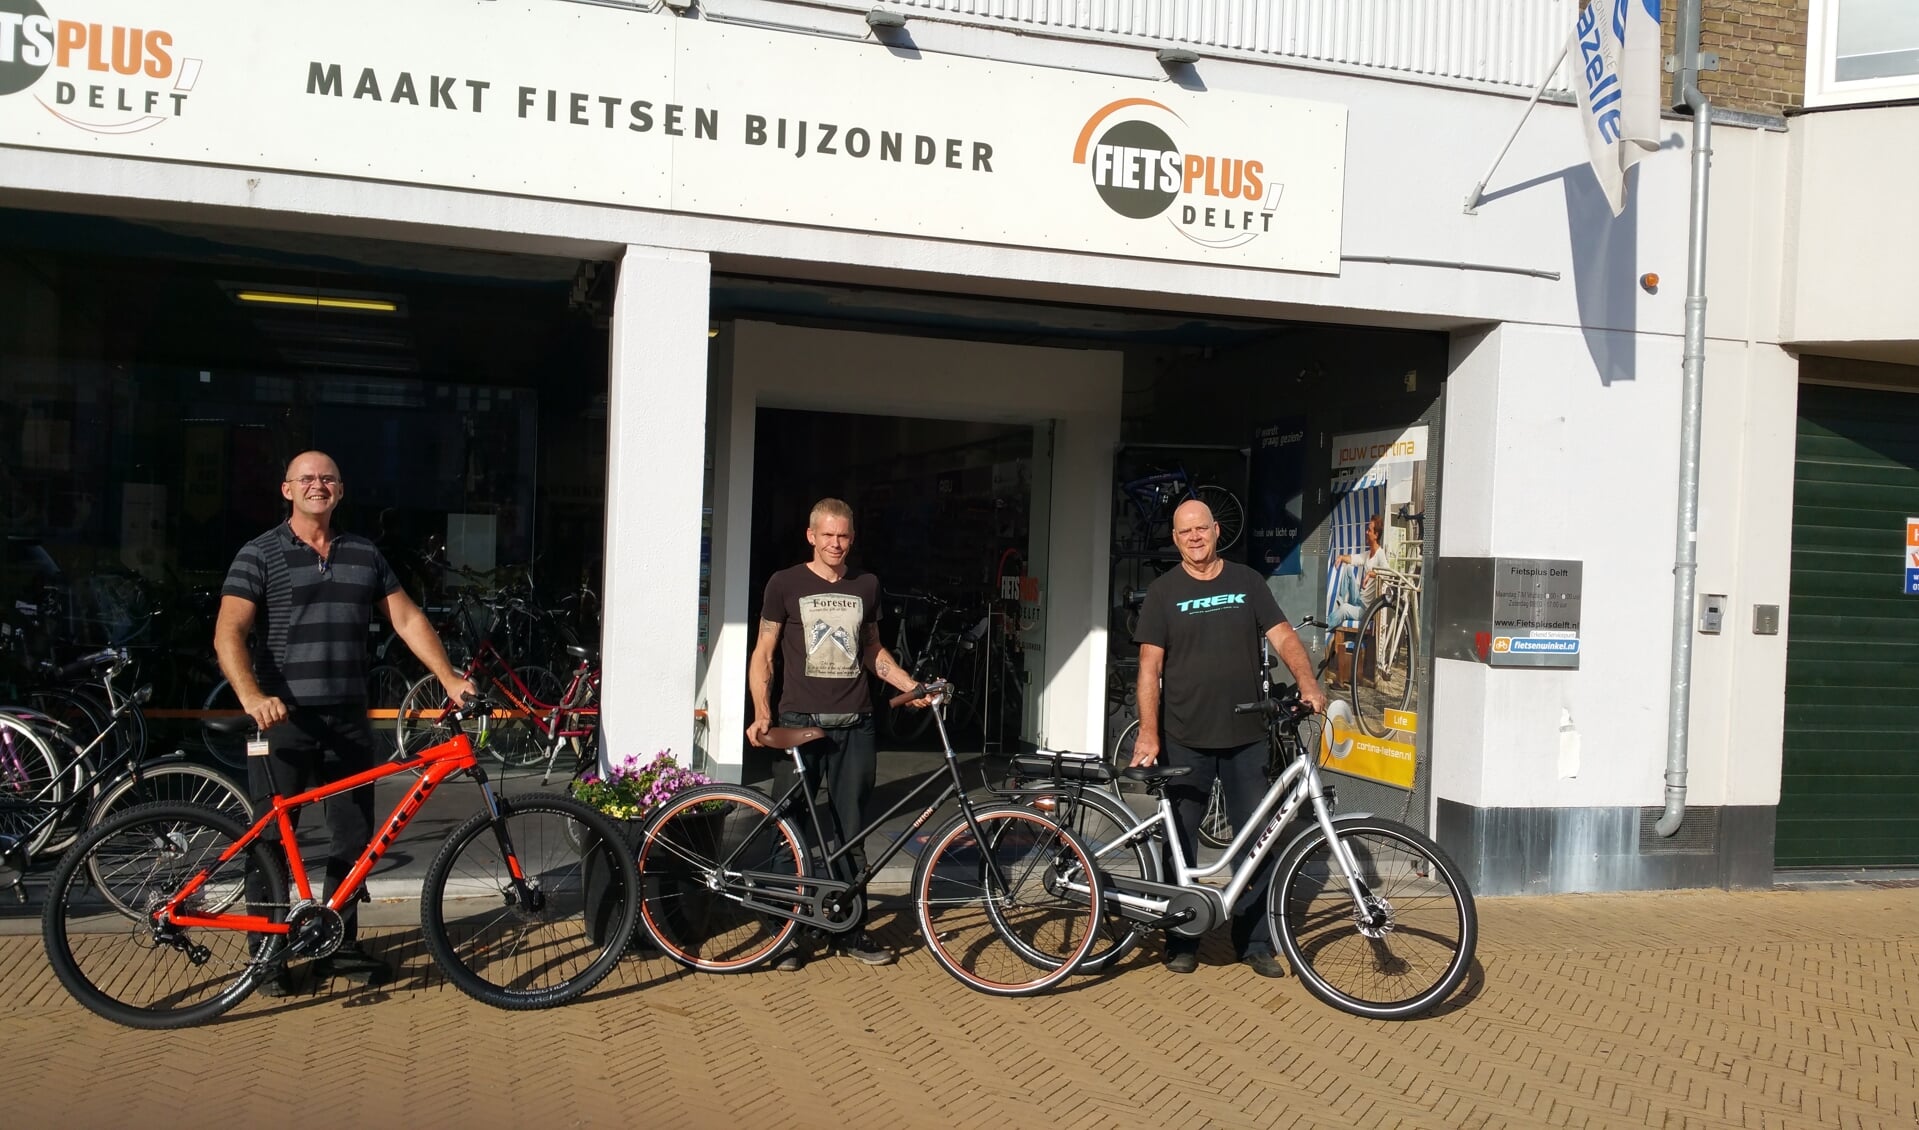 Het team van Fietsplus Delft maakt fietsen bijzonder